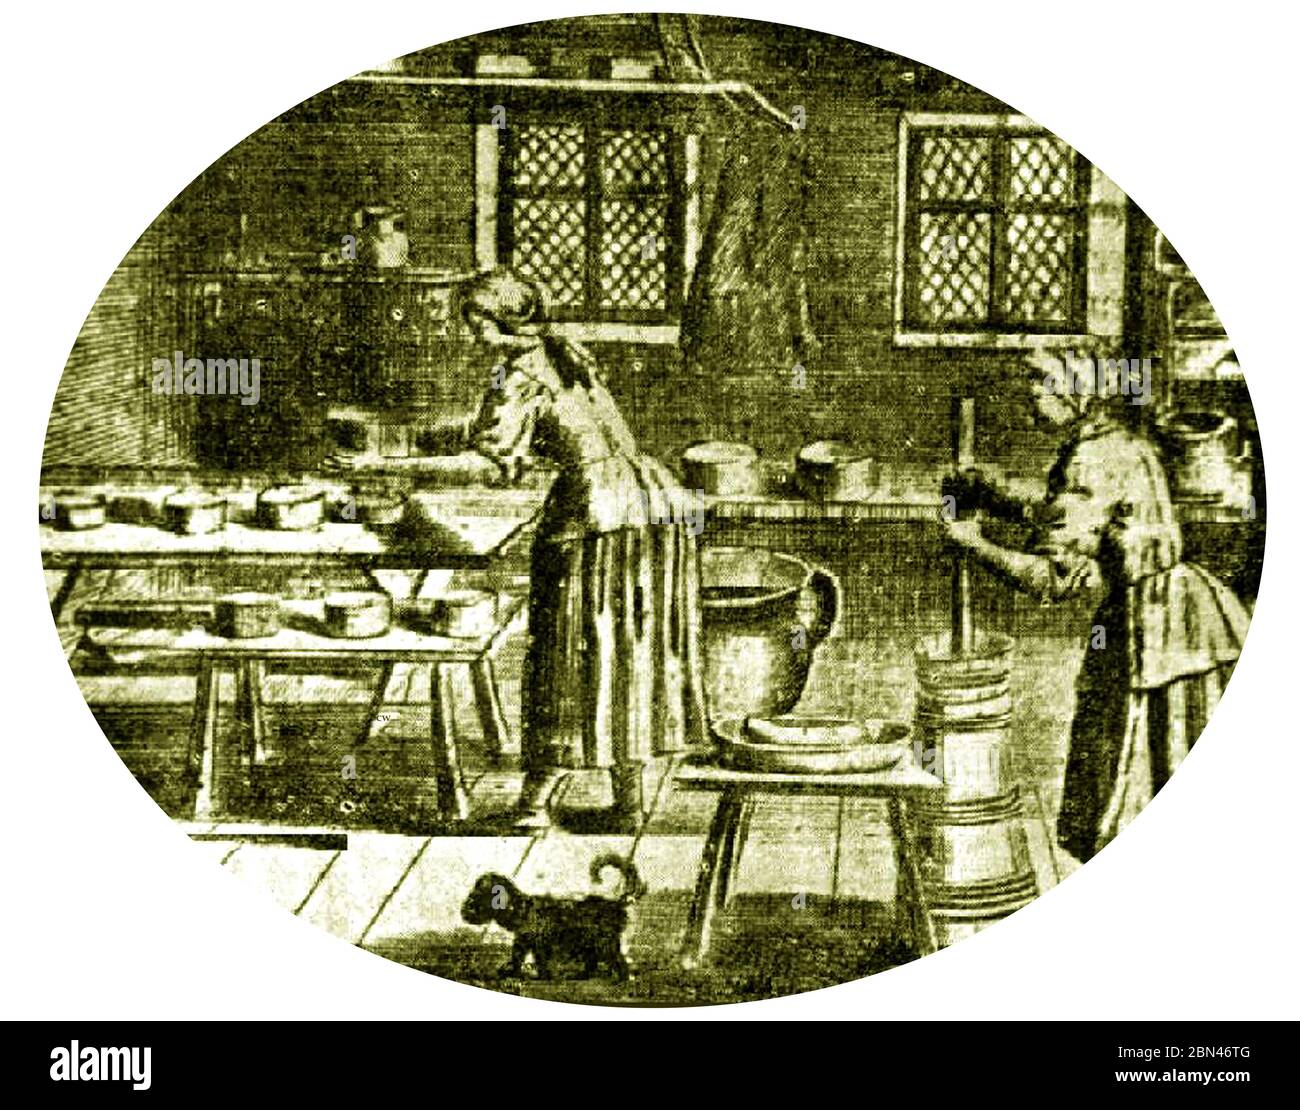 Molkereiindustrie in Großbritannien - Gravur der Molkereibetriebe aus dem 18. Jahrhundert, die Butter und Käse machen. Ein Hund läuft um den Milchboden und zeigt an, dass dies zu der Zeit keine Reinheitsbedenken war. Stockfoto